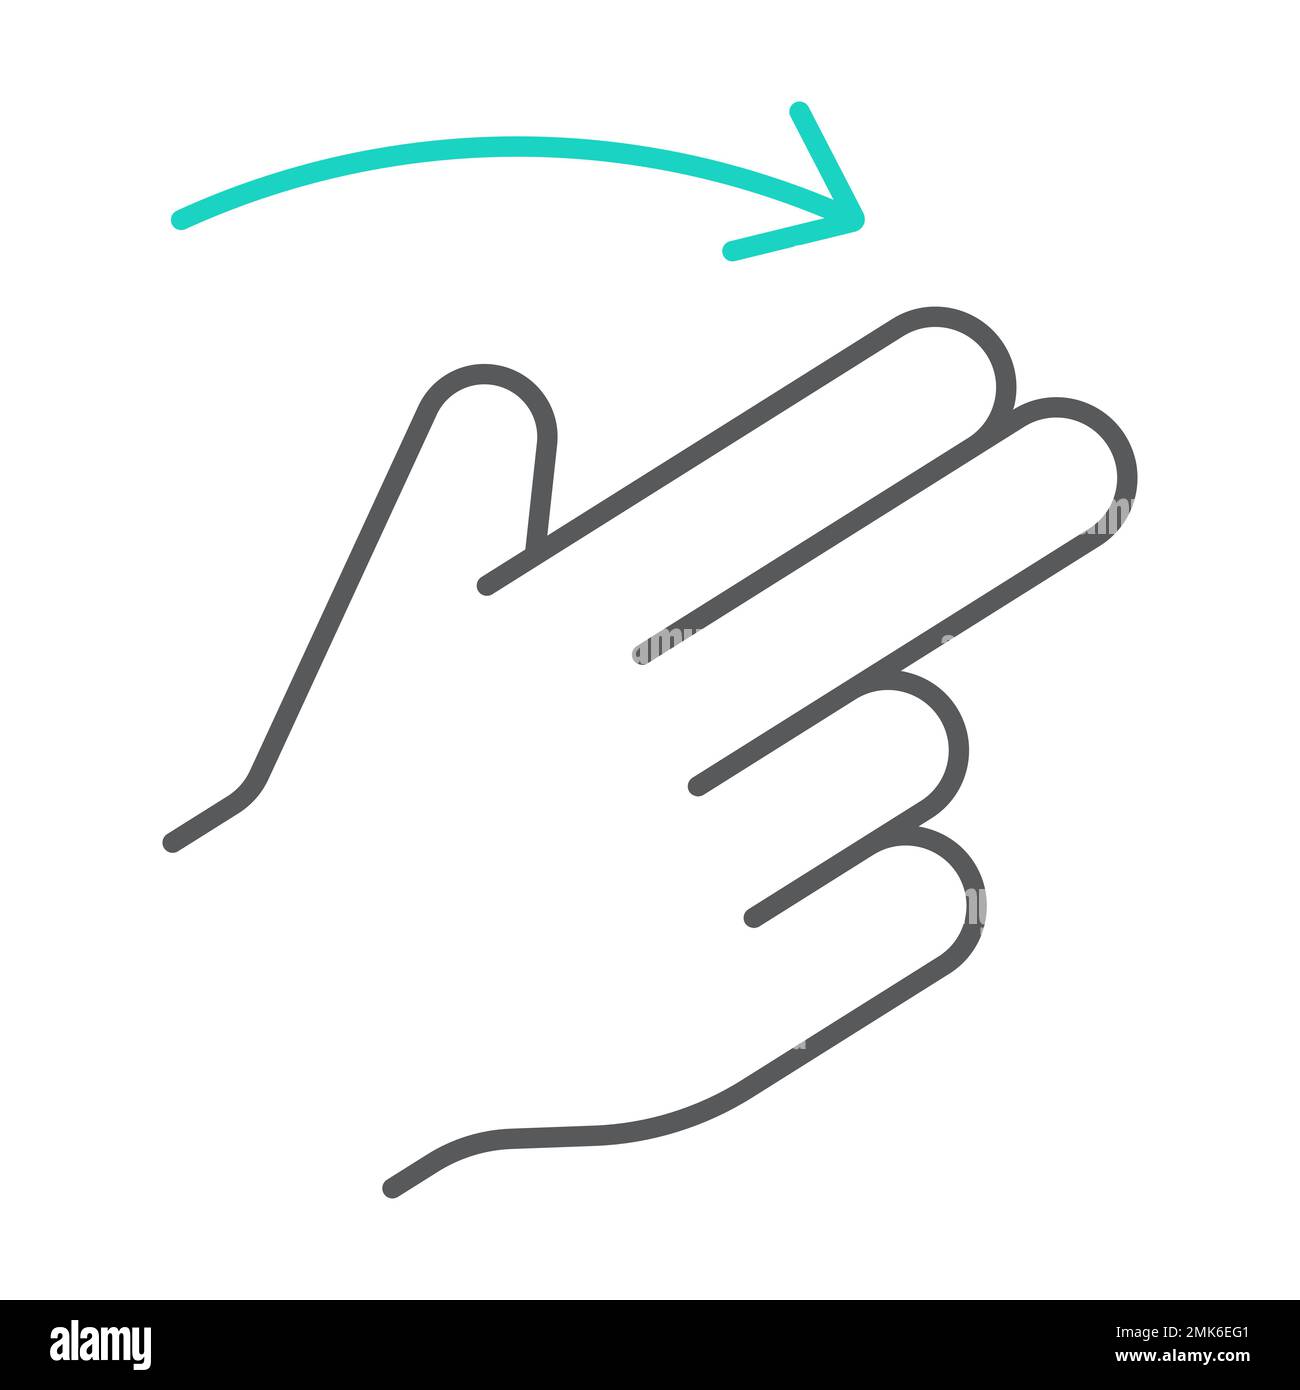 Zwei-Finger-Bewegung nach rechts, dünne Linie, Geste und Hand, Wischzeichen, Vektorgrafiken, lineares Muster auf weißem Hintergrund, eps 10. Stock Vektor